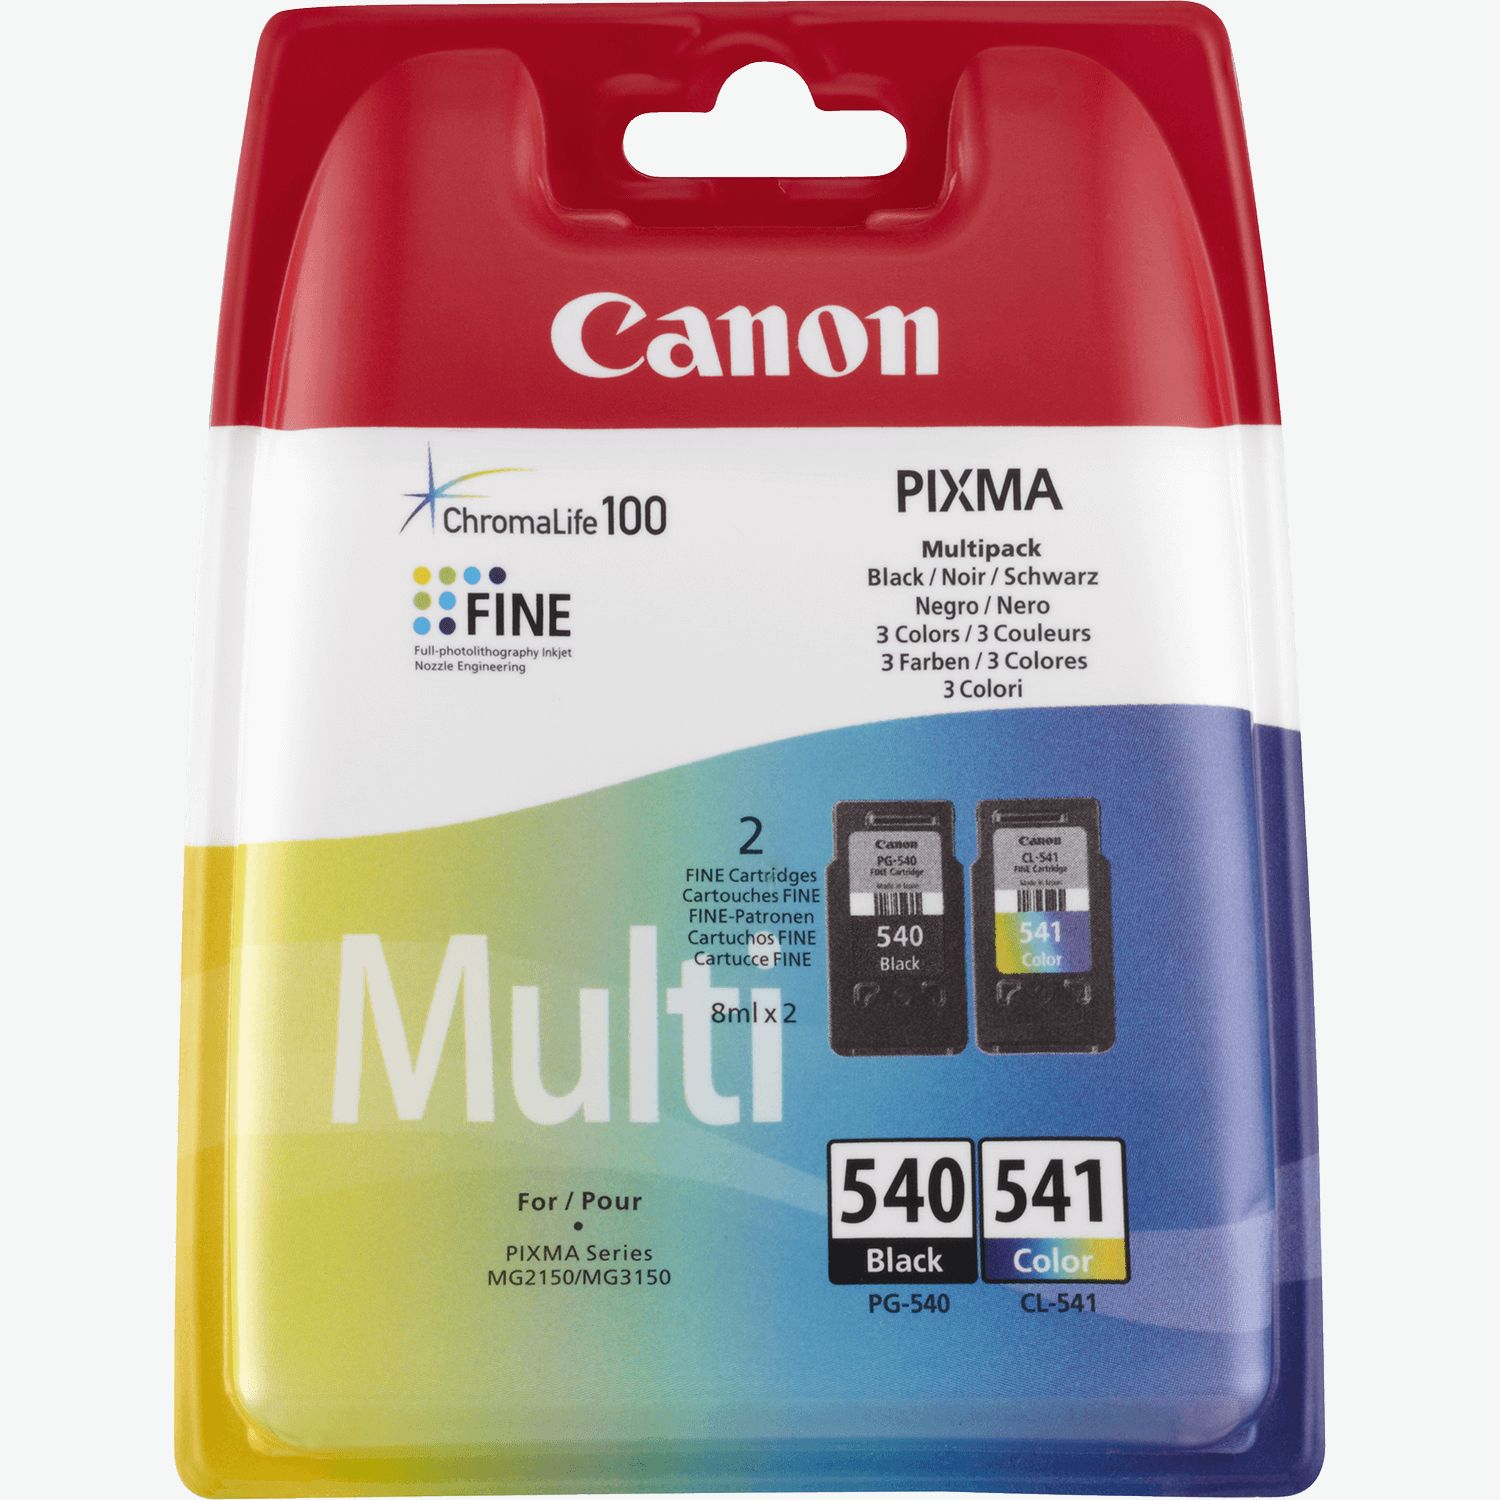 Sotel  Canon PIXMA MG3650S Inyección de tinta A4 4800 x 1200 DPI Wifi